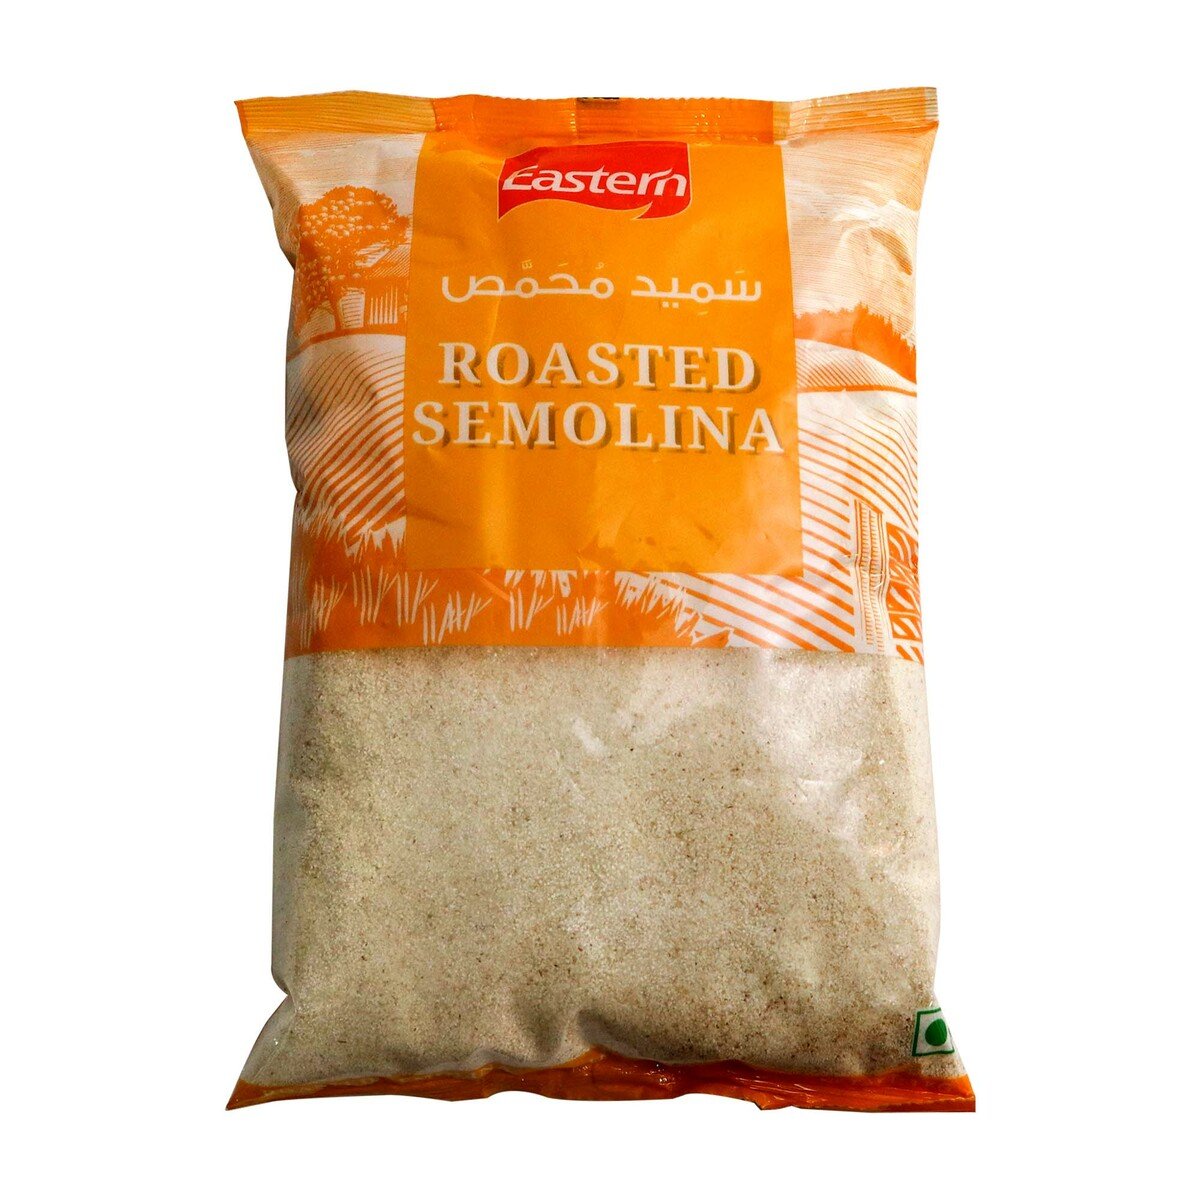 Eastern Roasted Semolina 1kg